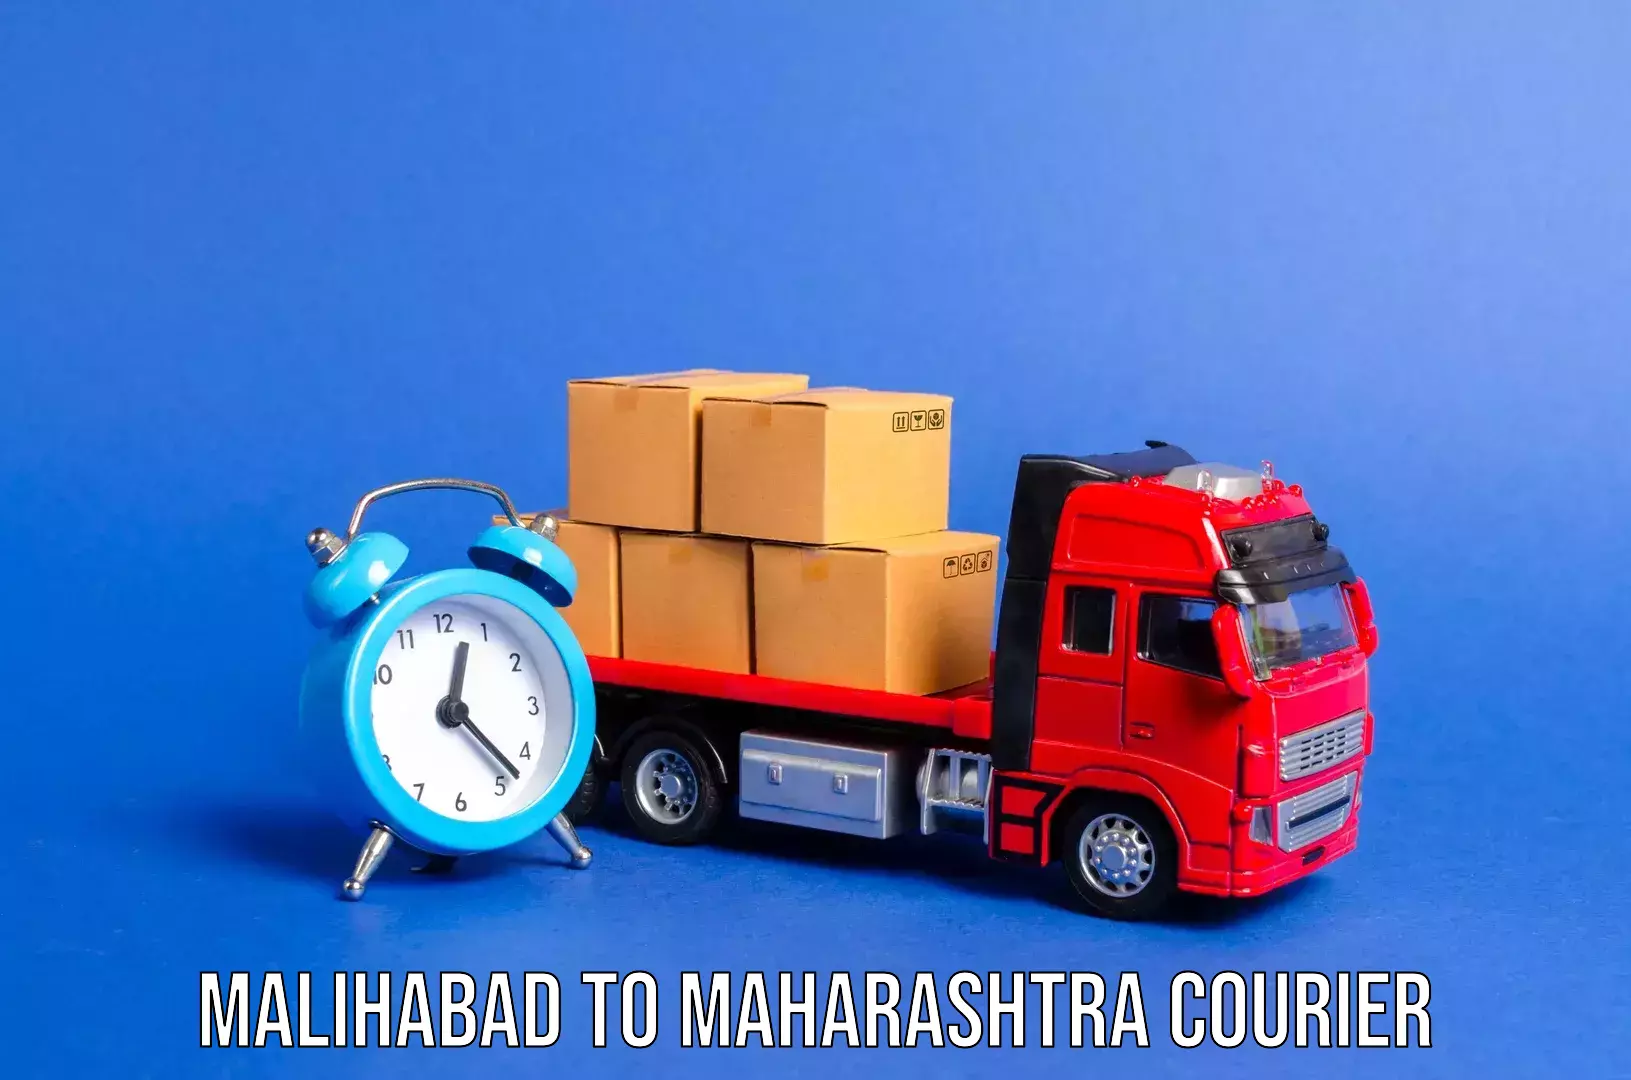 Baggage shipping service Malihabad to Pandharkawada